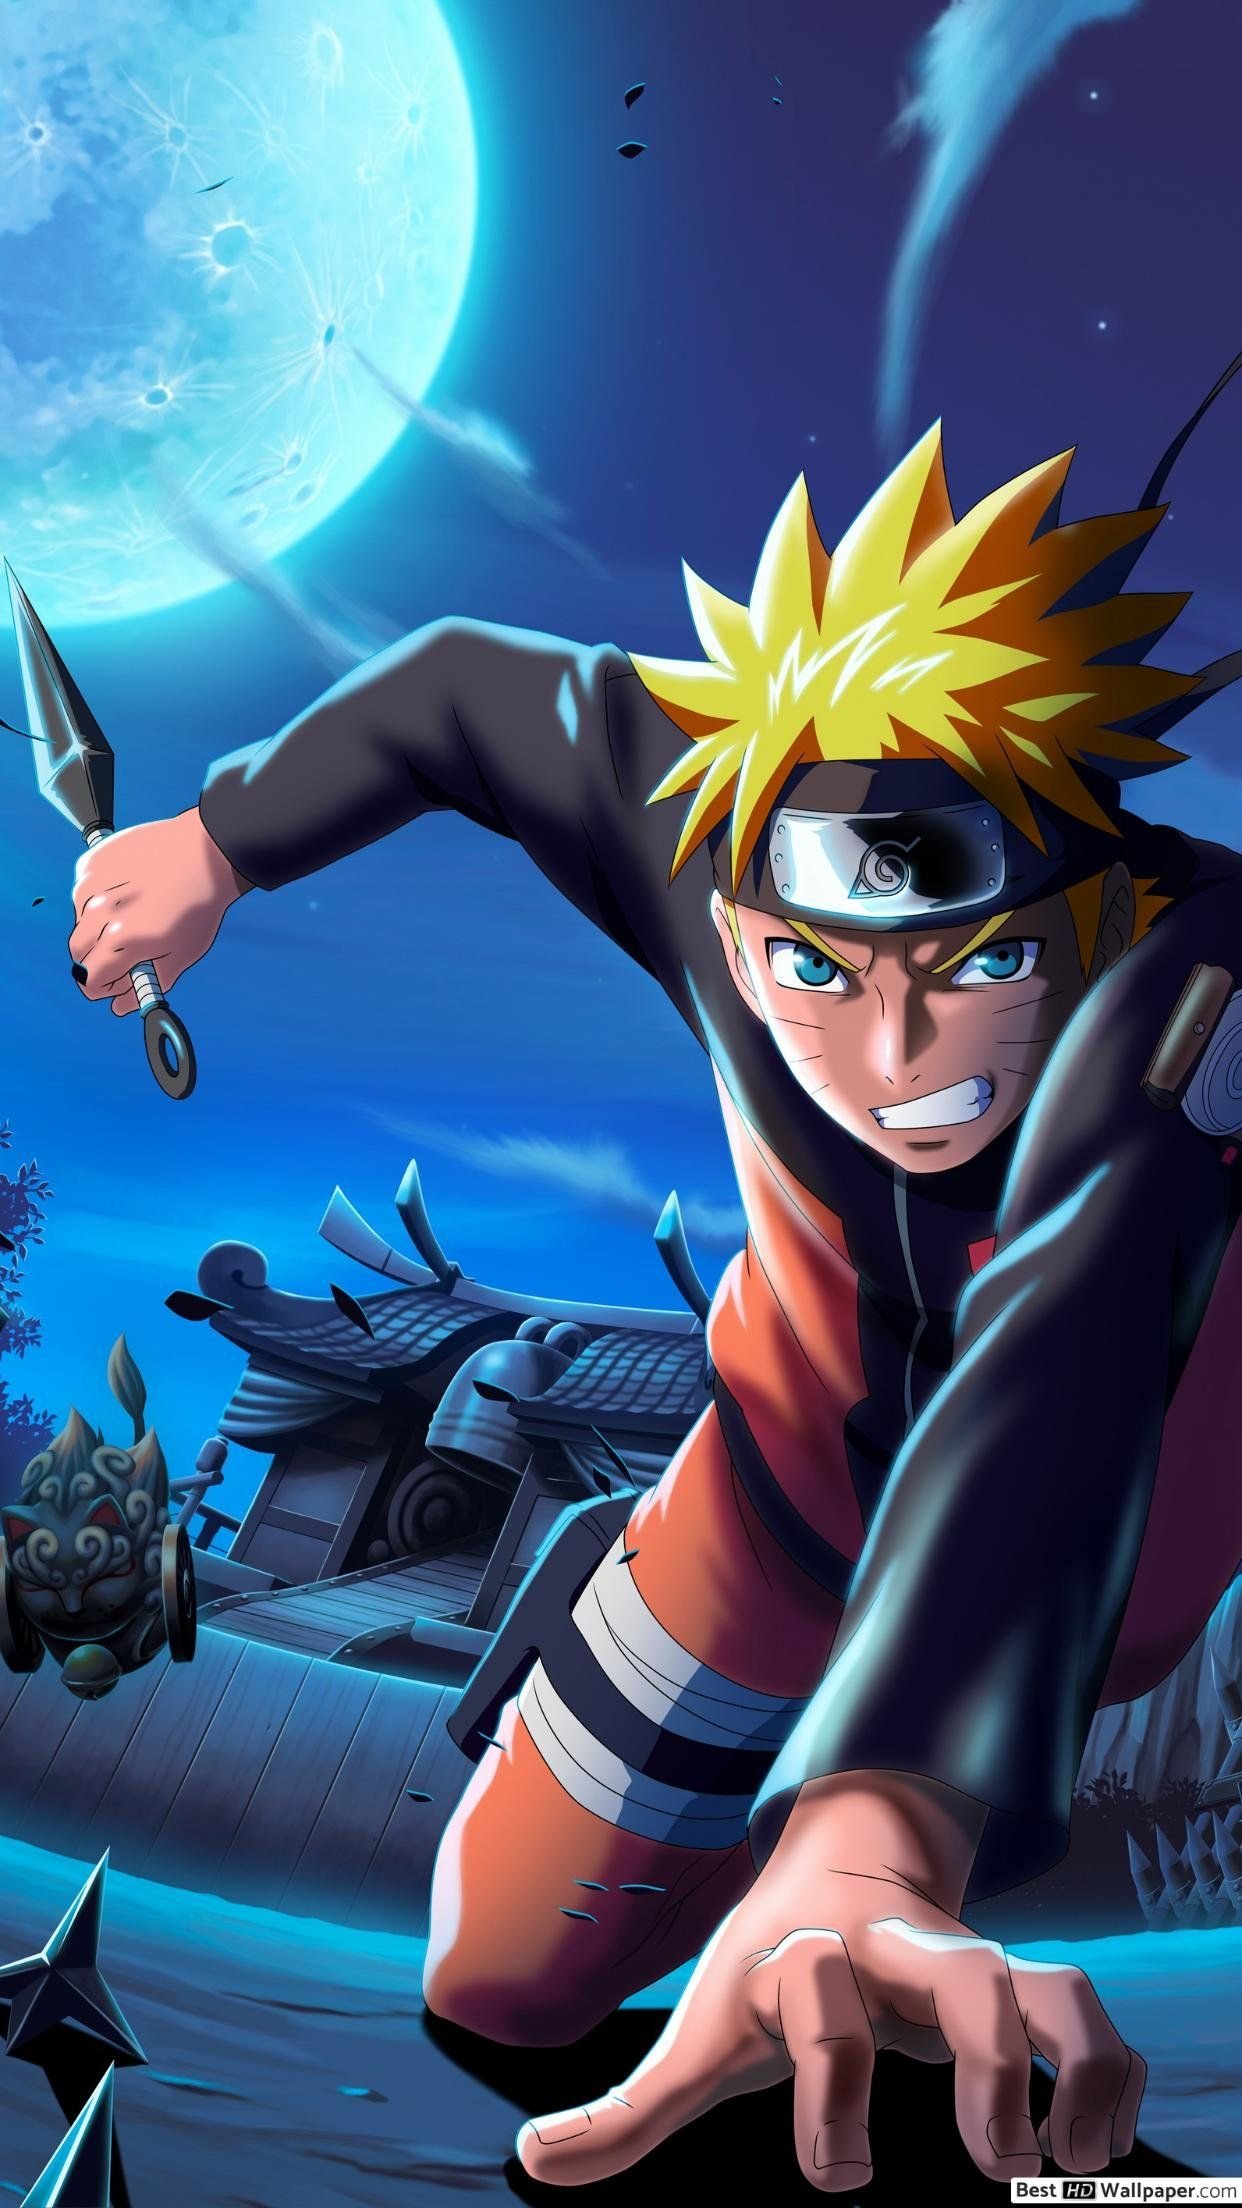 Anime Naruto And Sasuke Wallpaper Download | MobCup